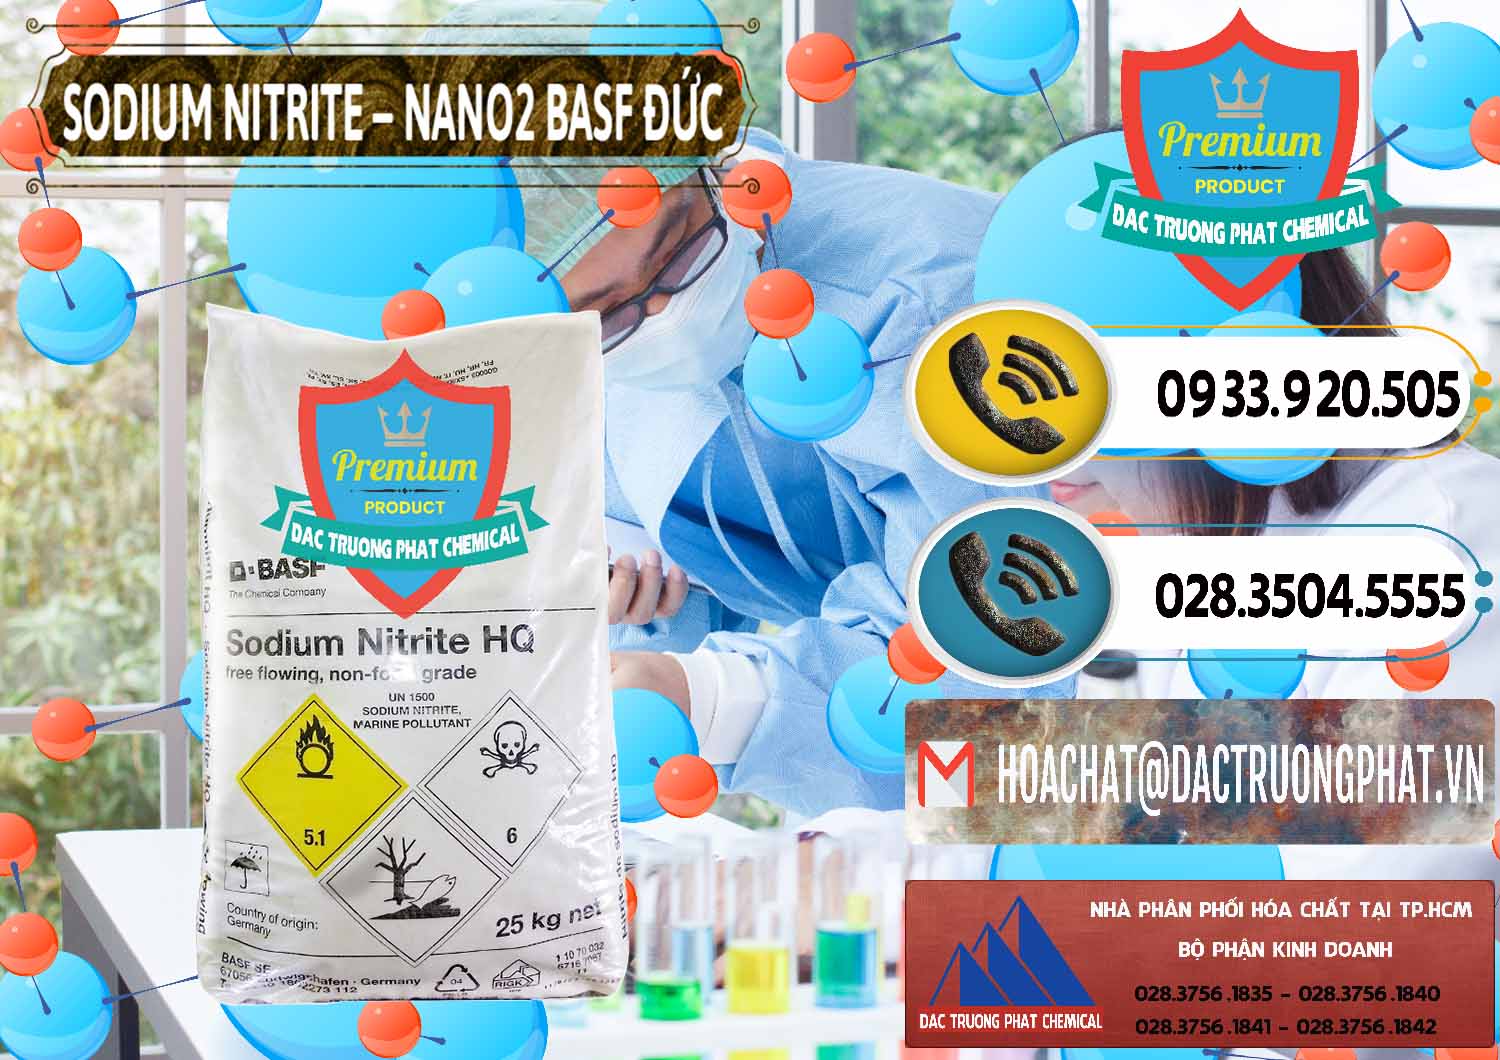 Nơi chuyên cung cấp - bán Sodium Nitrite - NANO2 Đức BASF Germany - 0148 - Cung cấp - bán hóa chất tại TP.HCM - hoachatdetnhuom.vn